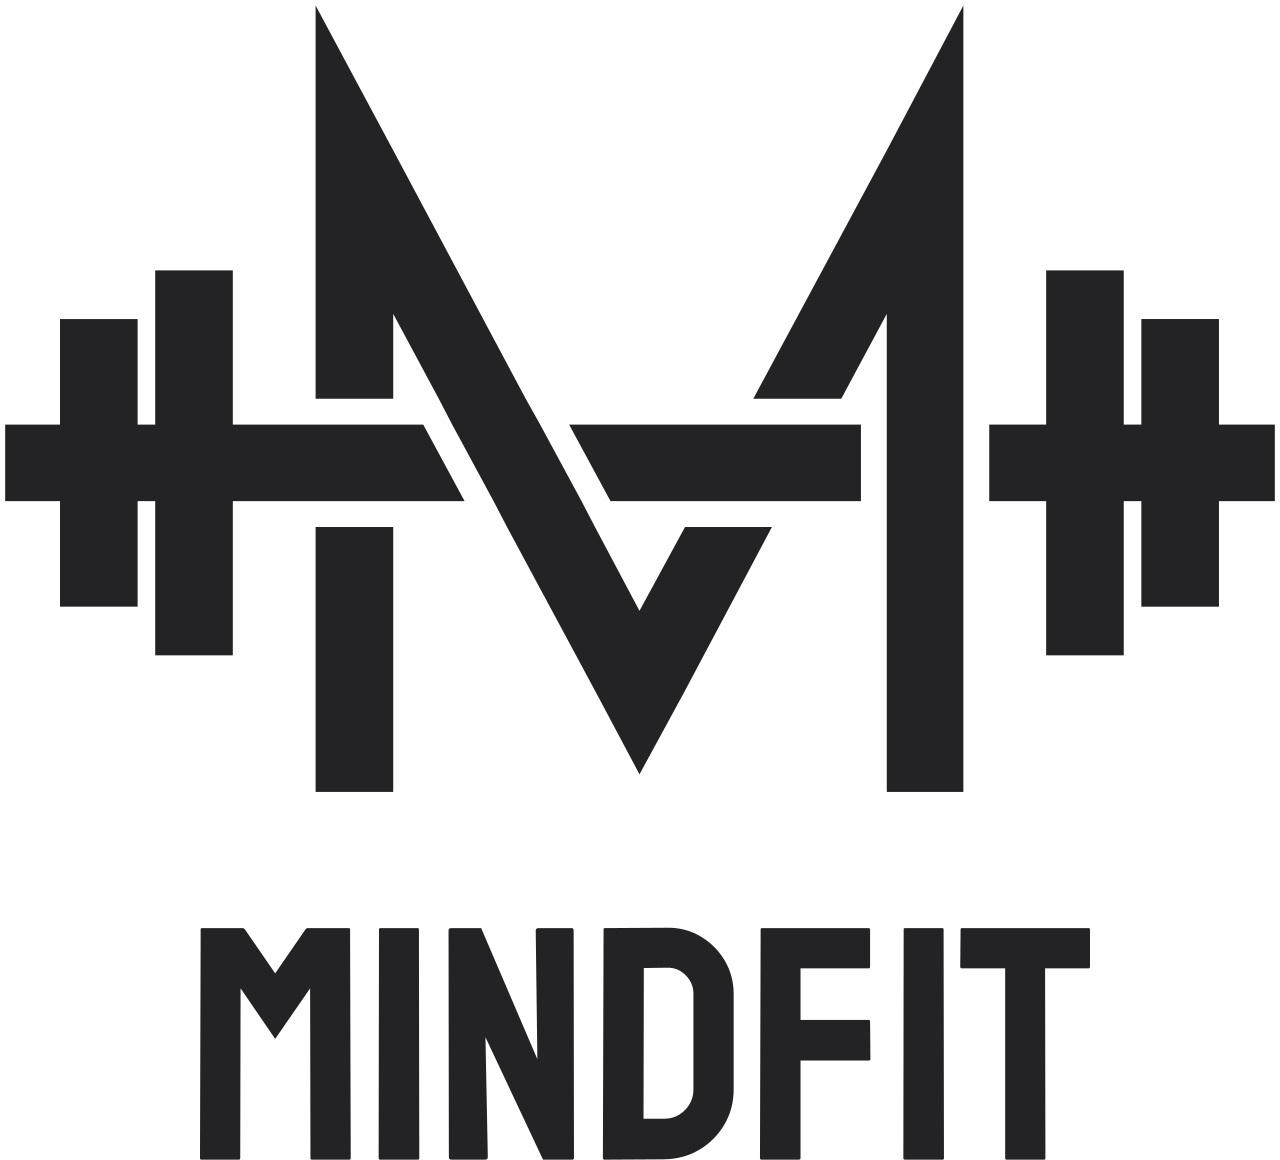 MindFit's web page